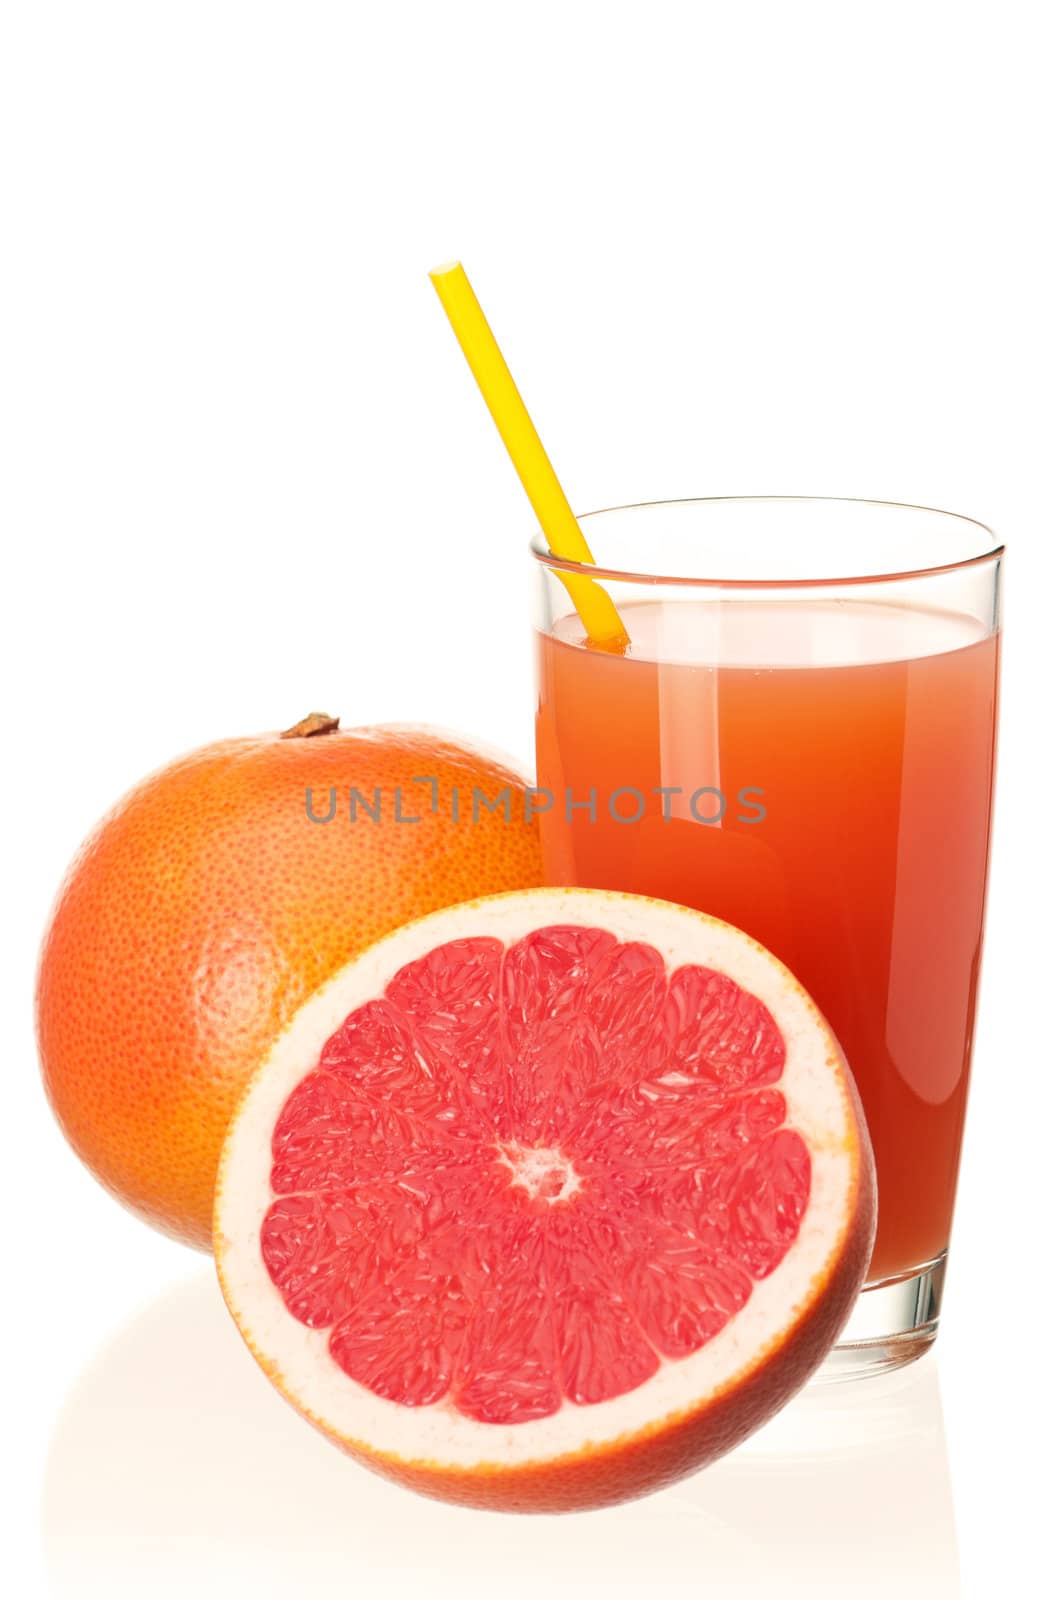 Orange juice by fotostok_pdv